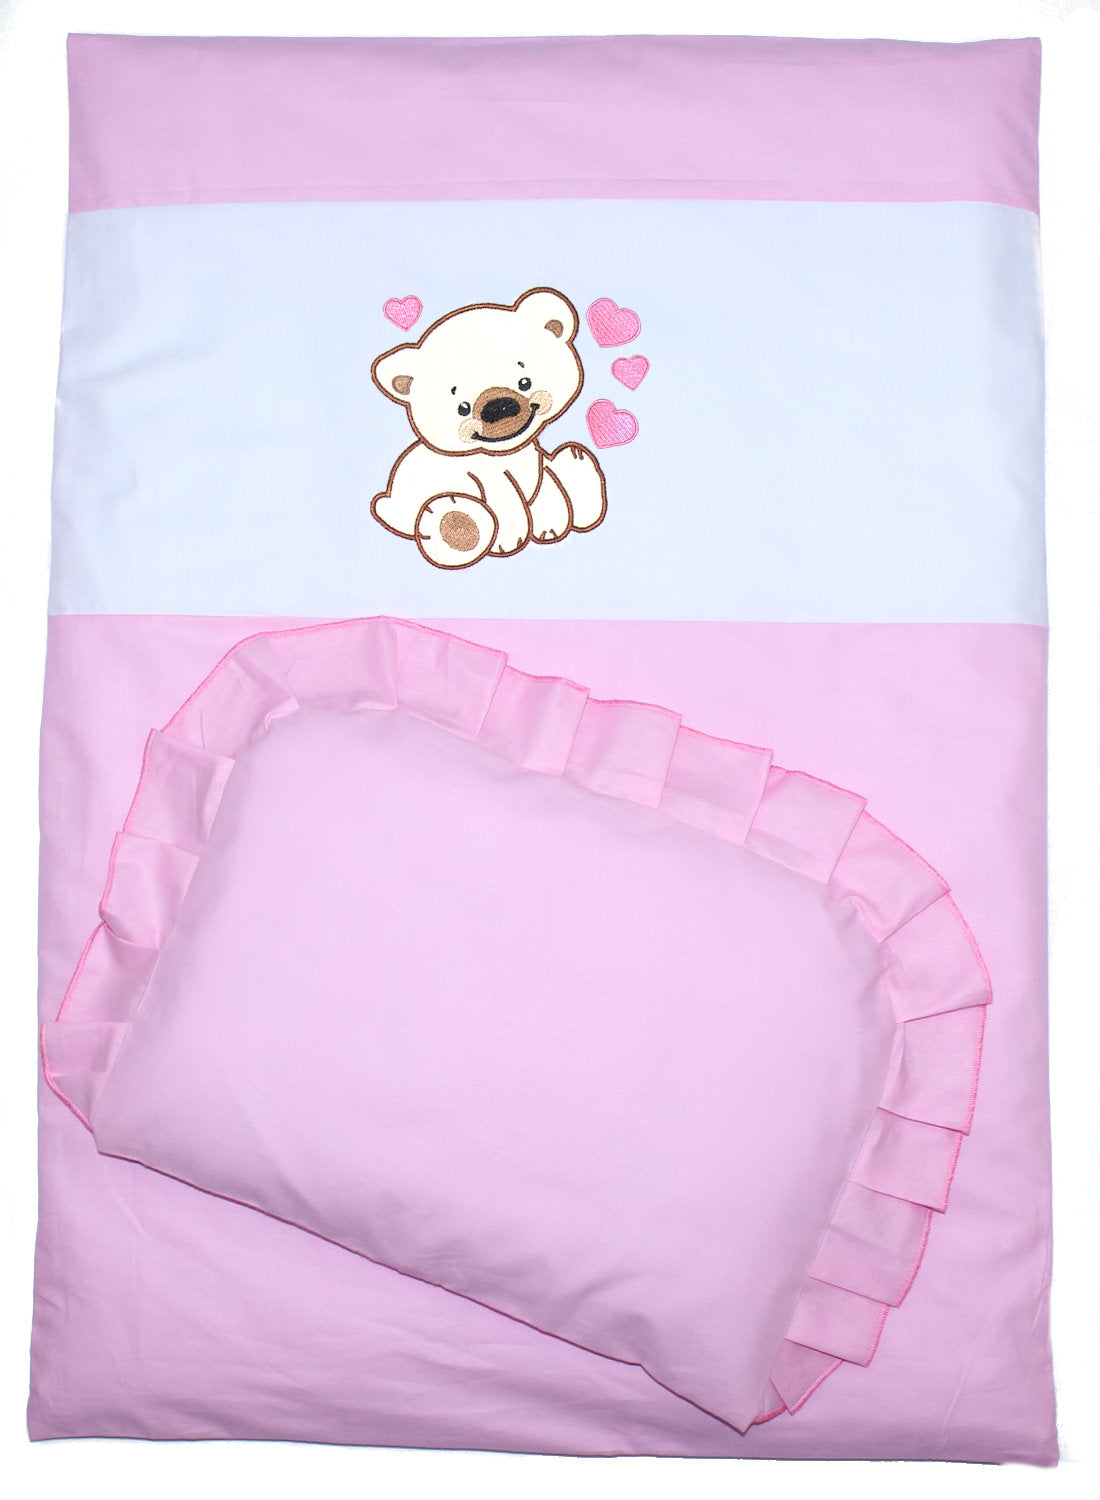 2- 4tlg Kinderwagenset - Bärchen mit Herzen - Rosa- Bettwäsche für Kinderwagen Bezüge Decke Kissen